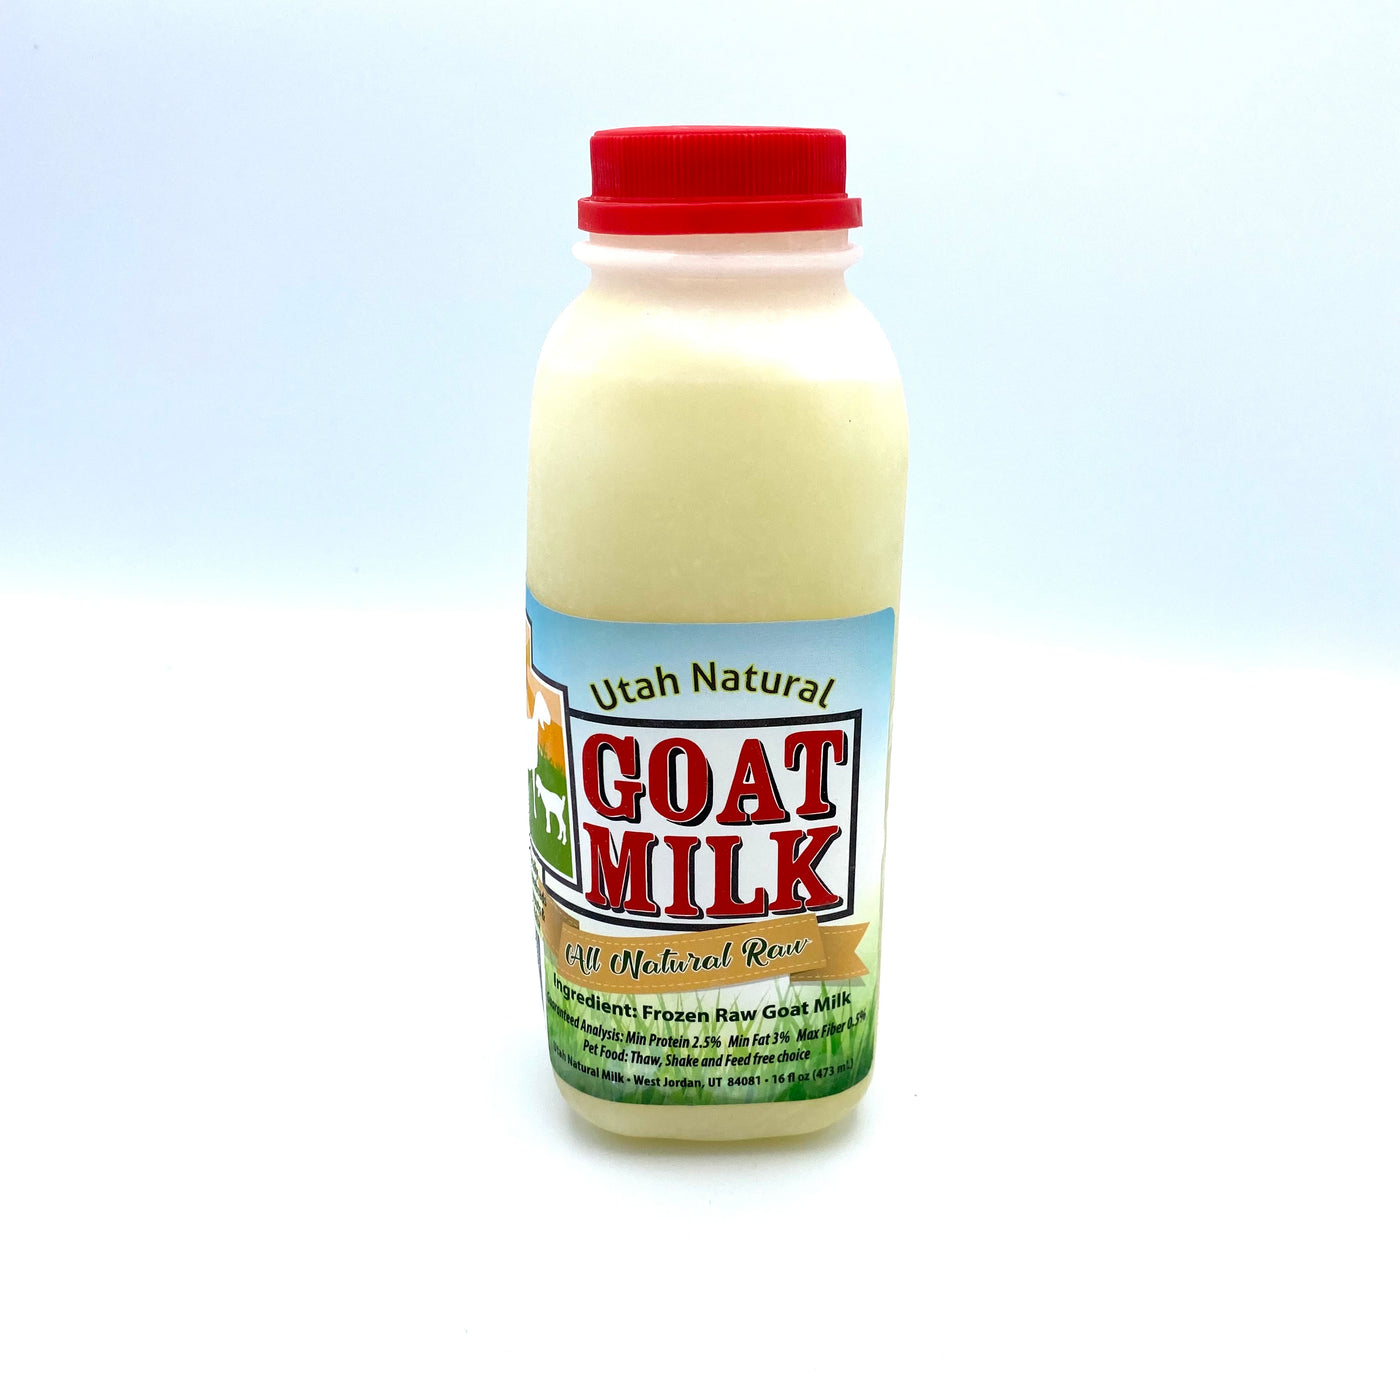 Utah Natural Goat Milk Pint